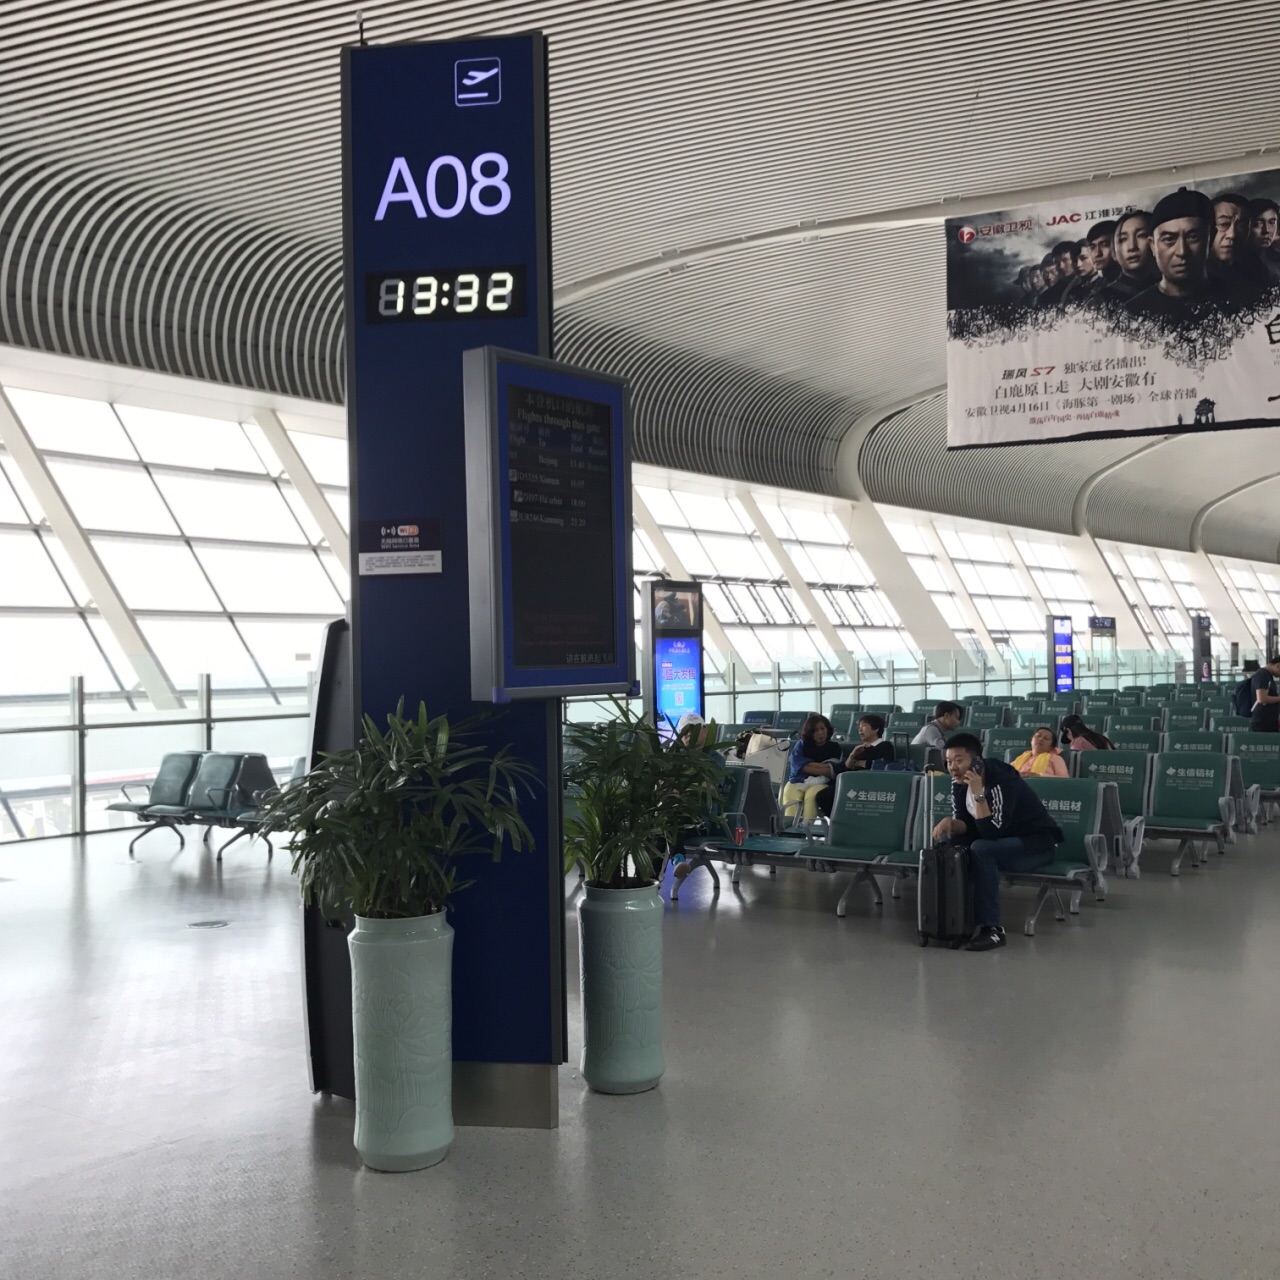 合肥新桥机场是一座现代化的国际机场,规模适当,很容易找到登机口